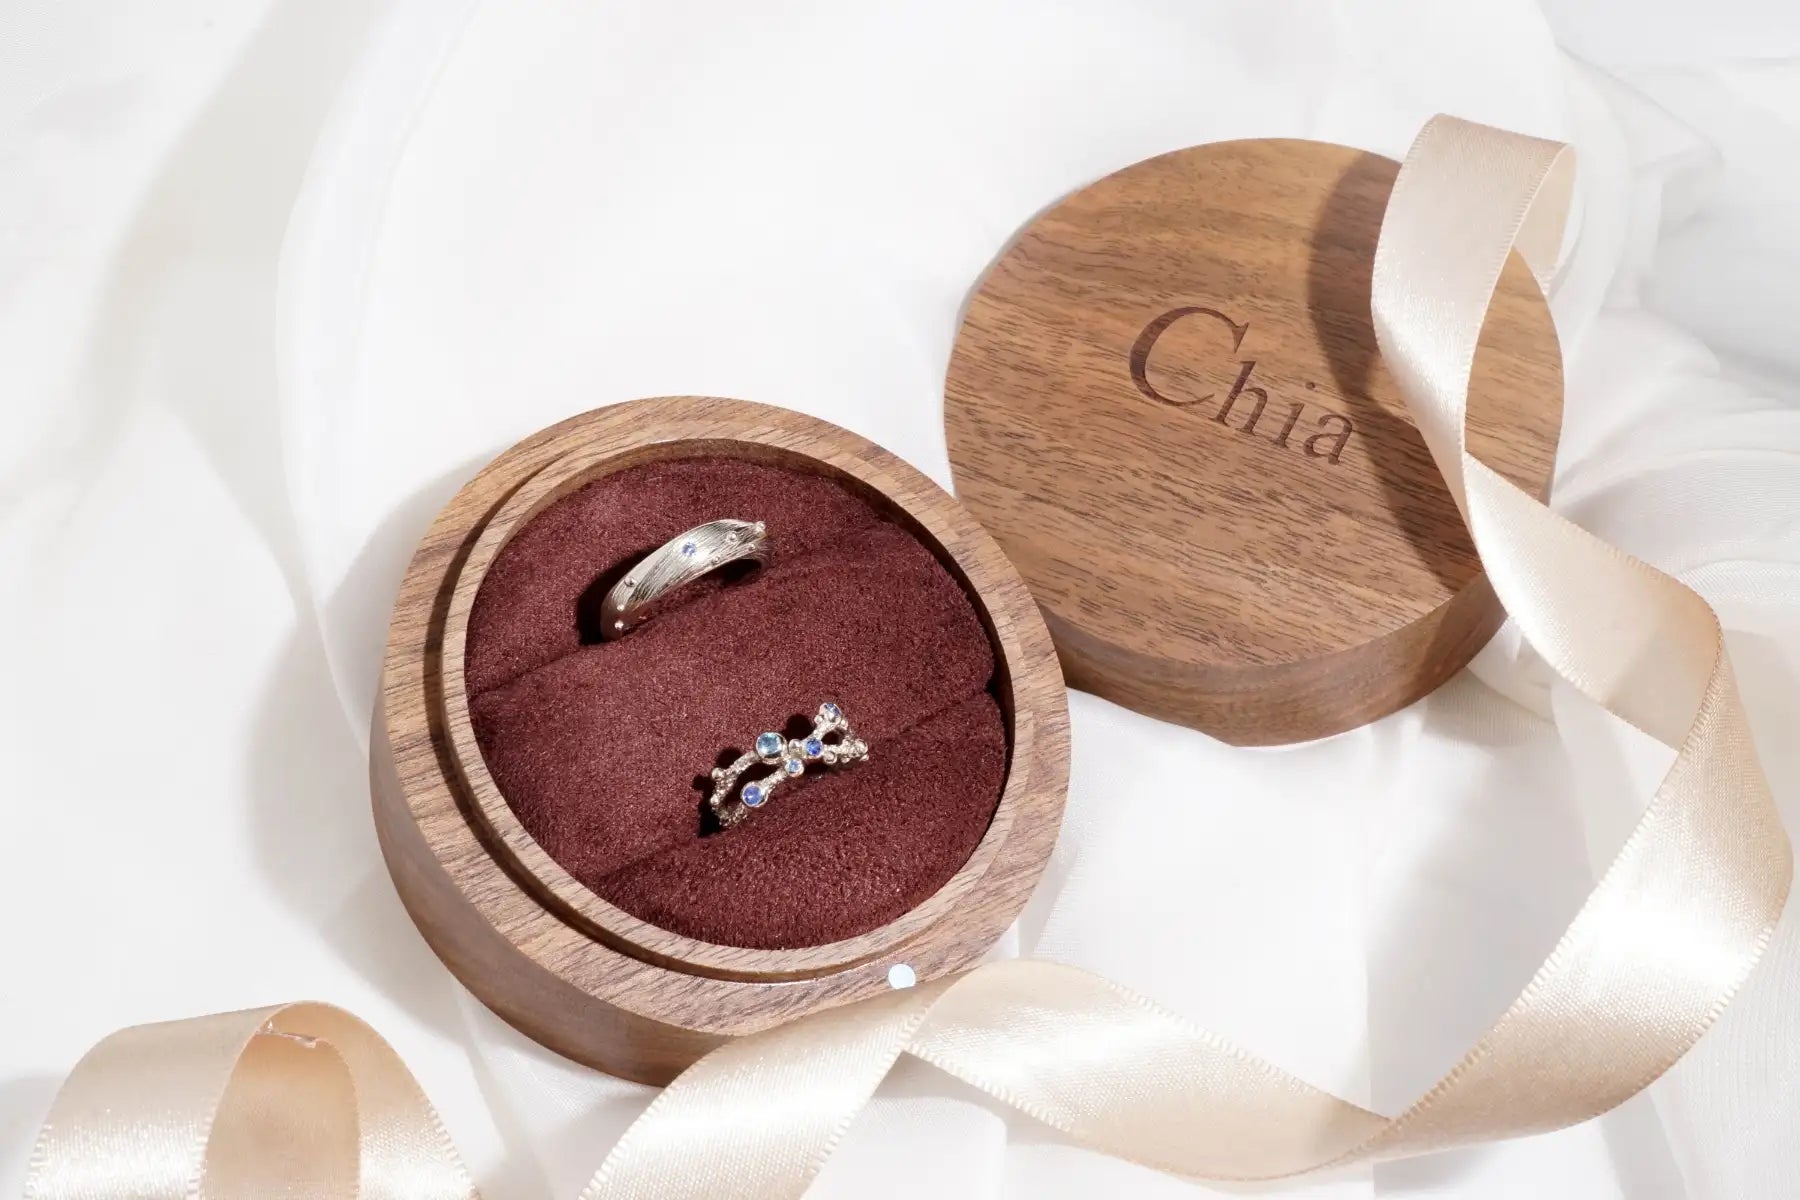 chia jewelry訂製對戒婚戒與求婚戒客製化介紹，用手工打造的夢想婚戒訴說你們的故事